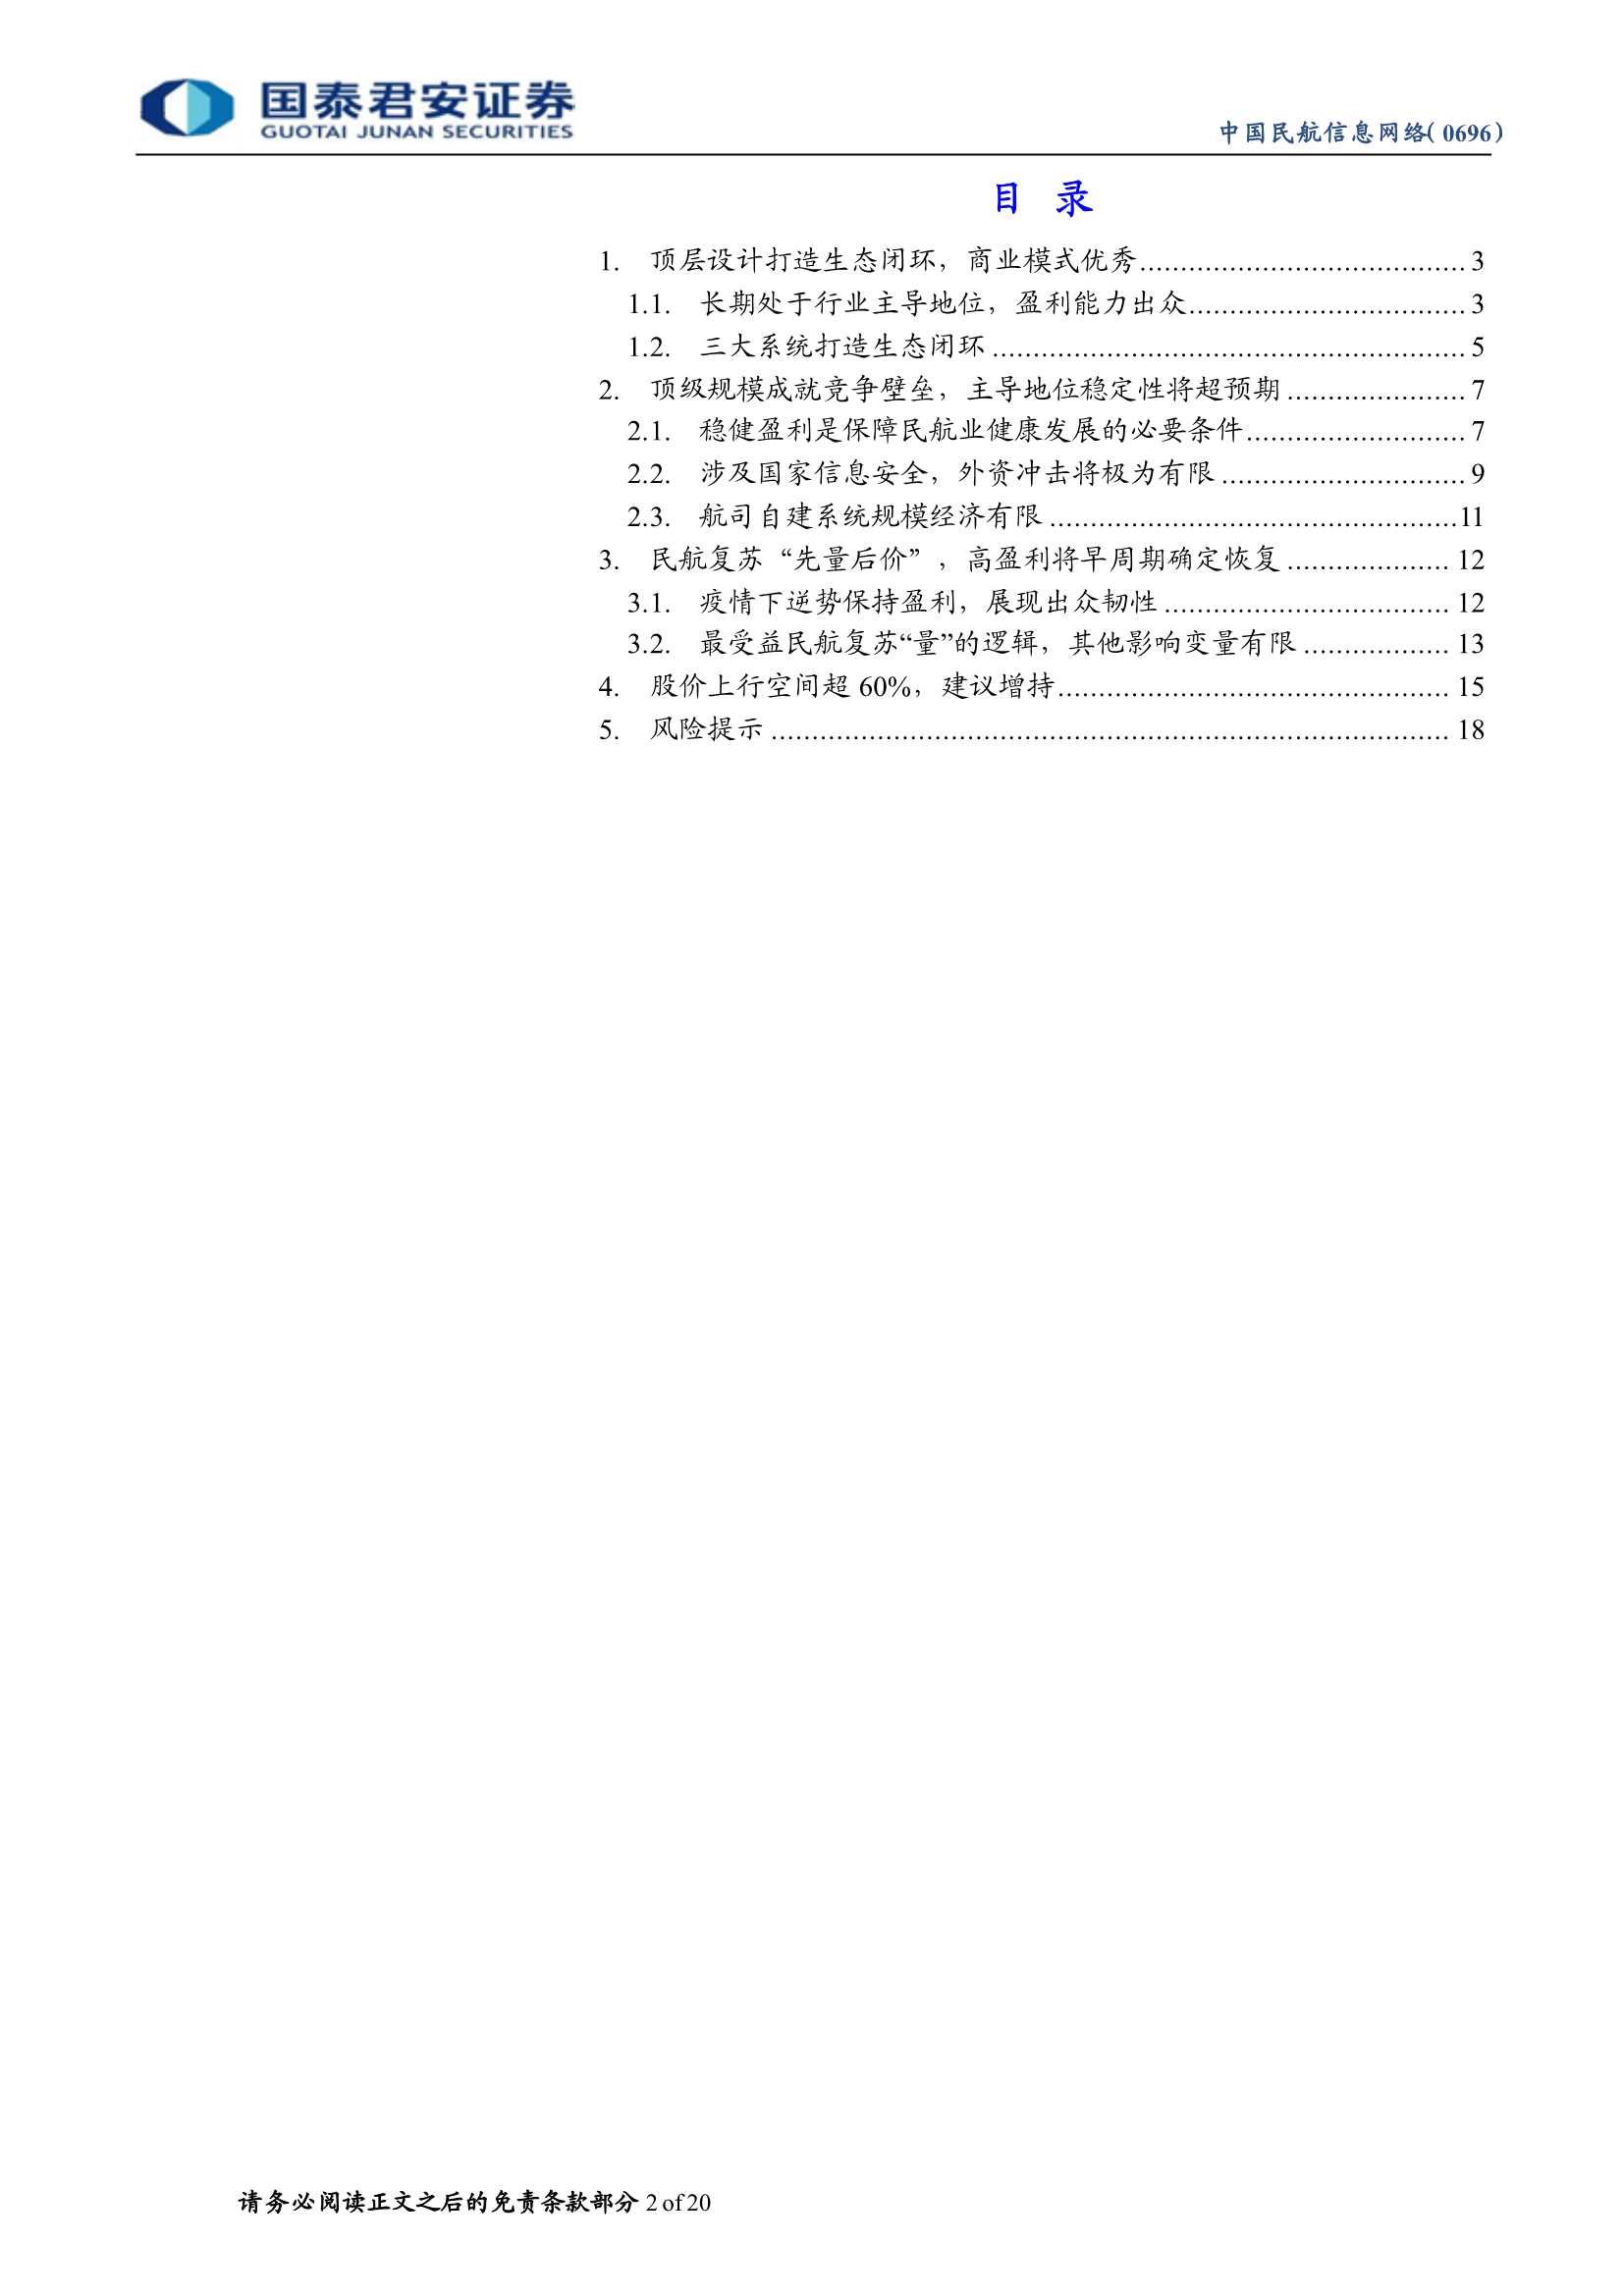 国泰君安-中国民航信息网络-0696.HK-深度报告：被显著低估的民航复苏早周期标的-20220221-20页